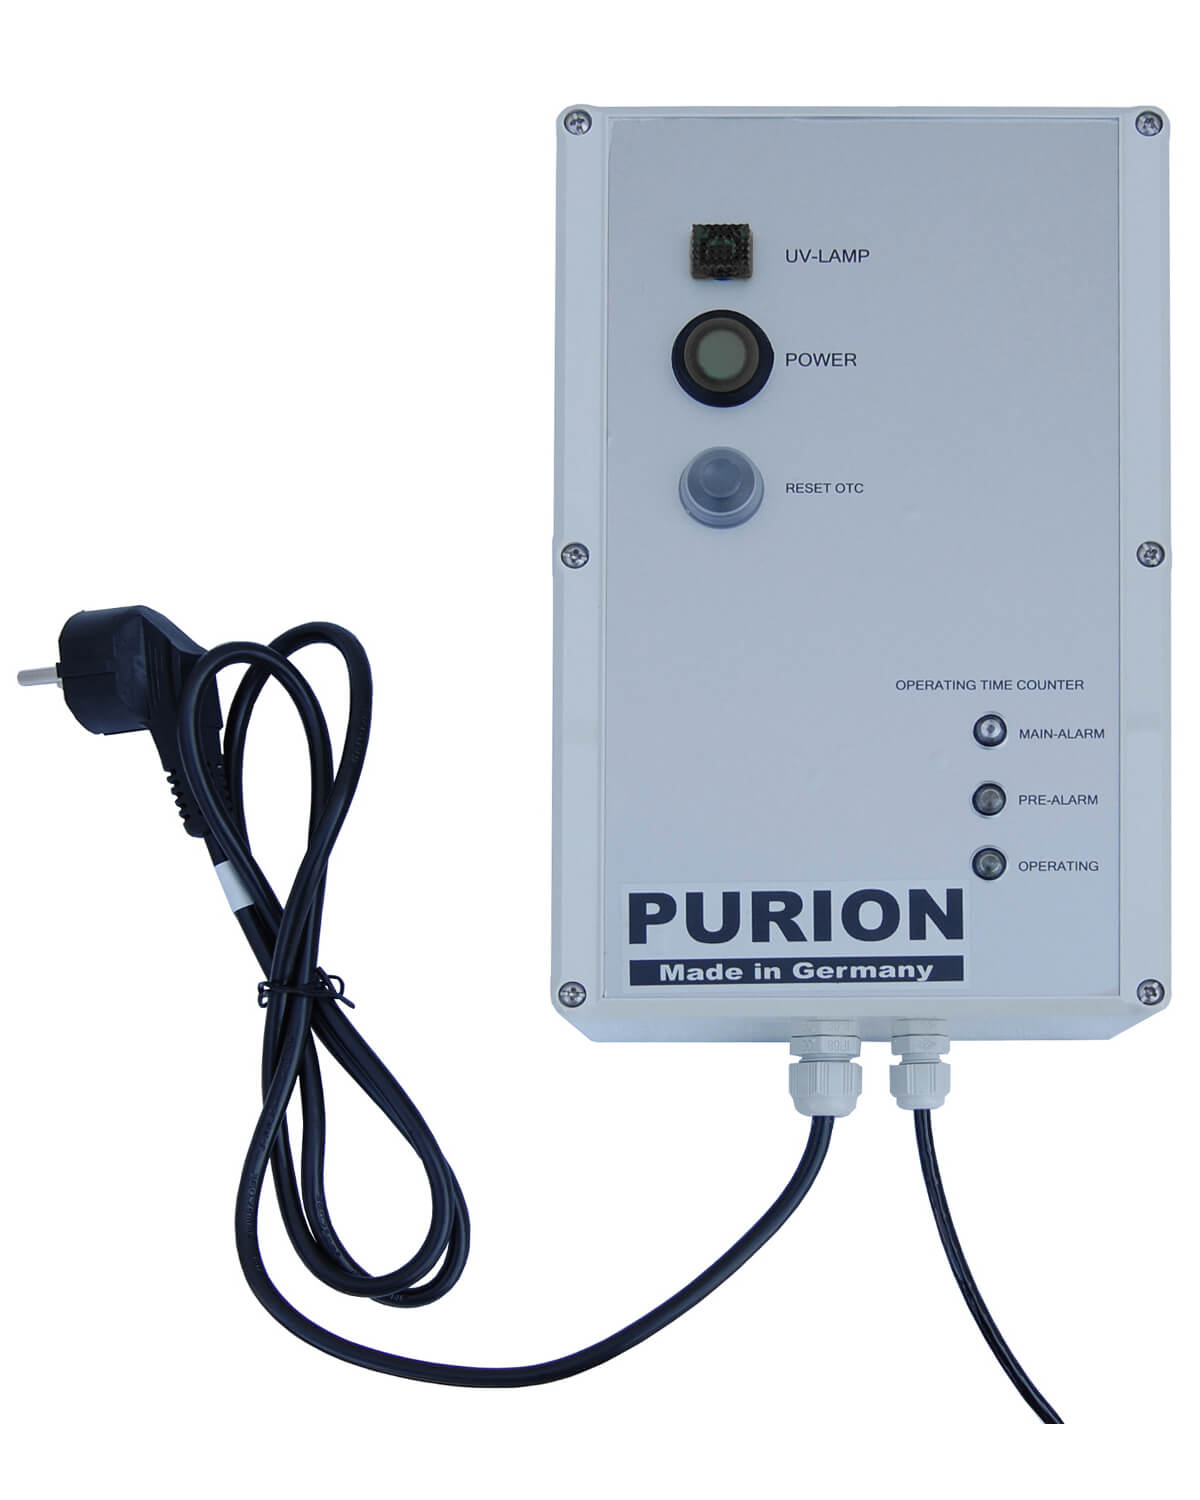 Dieses PURION-System verfügt über das kompakte Kompaktsystem MAX der PURION GmbH mit integriertem Partikelfilter und leistungsstarker PURION UV-C-Desinfektionslage für effiziente Reinigung und Sterilisation.